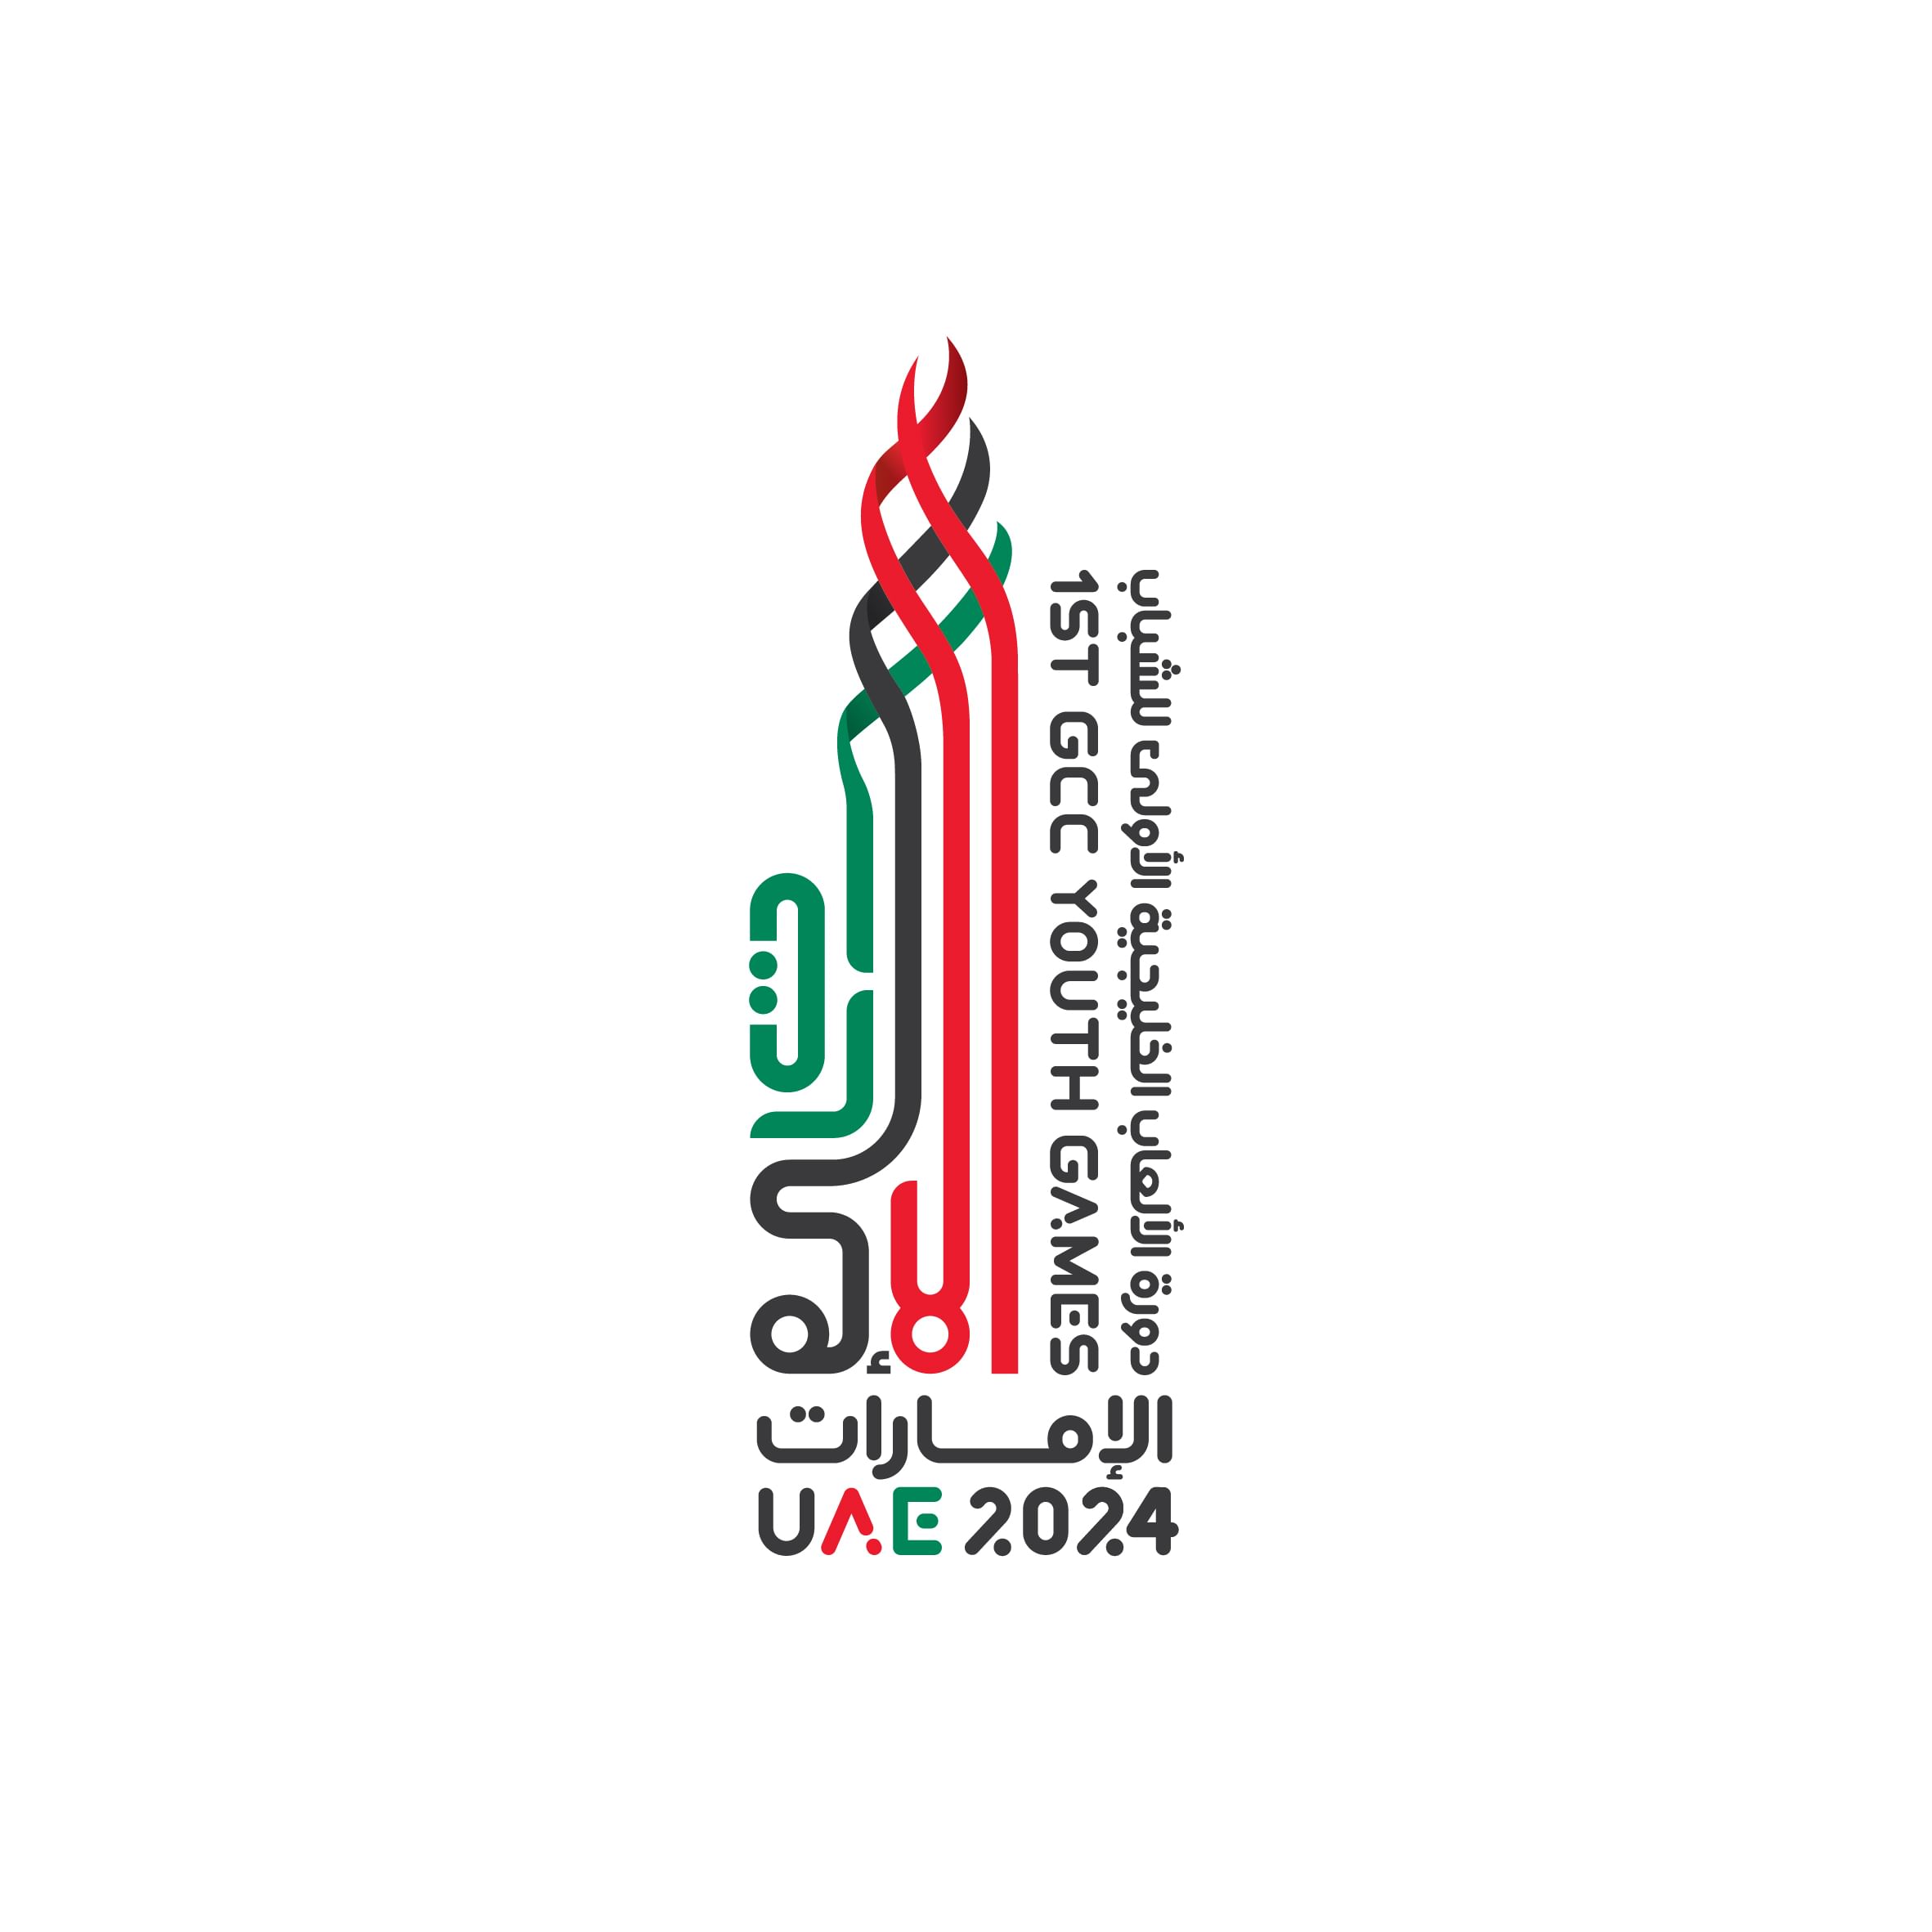 منافسات ألعاب القوى بدورة الألعاب الخليجية الأولى للشباب بالامارات تنطلق غدا الخميس                                                                                                                                                                       